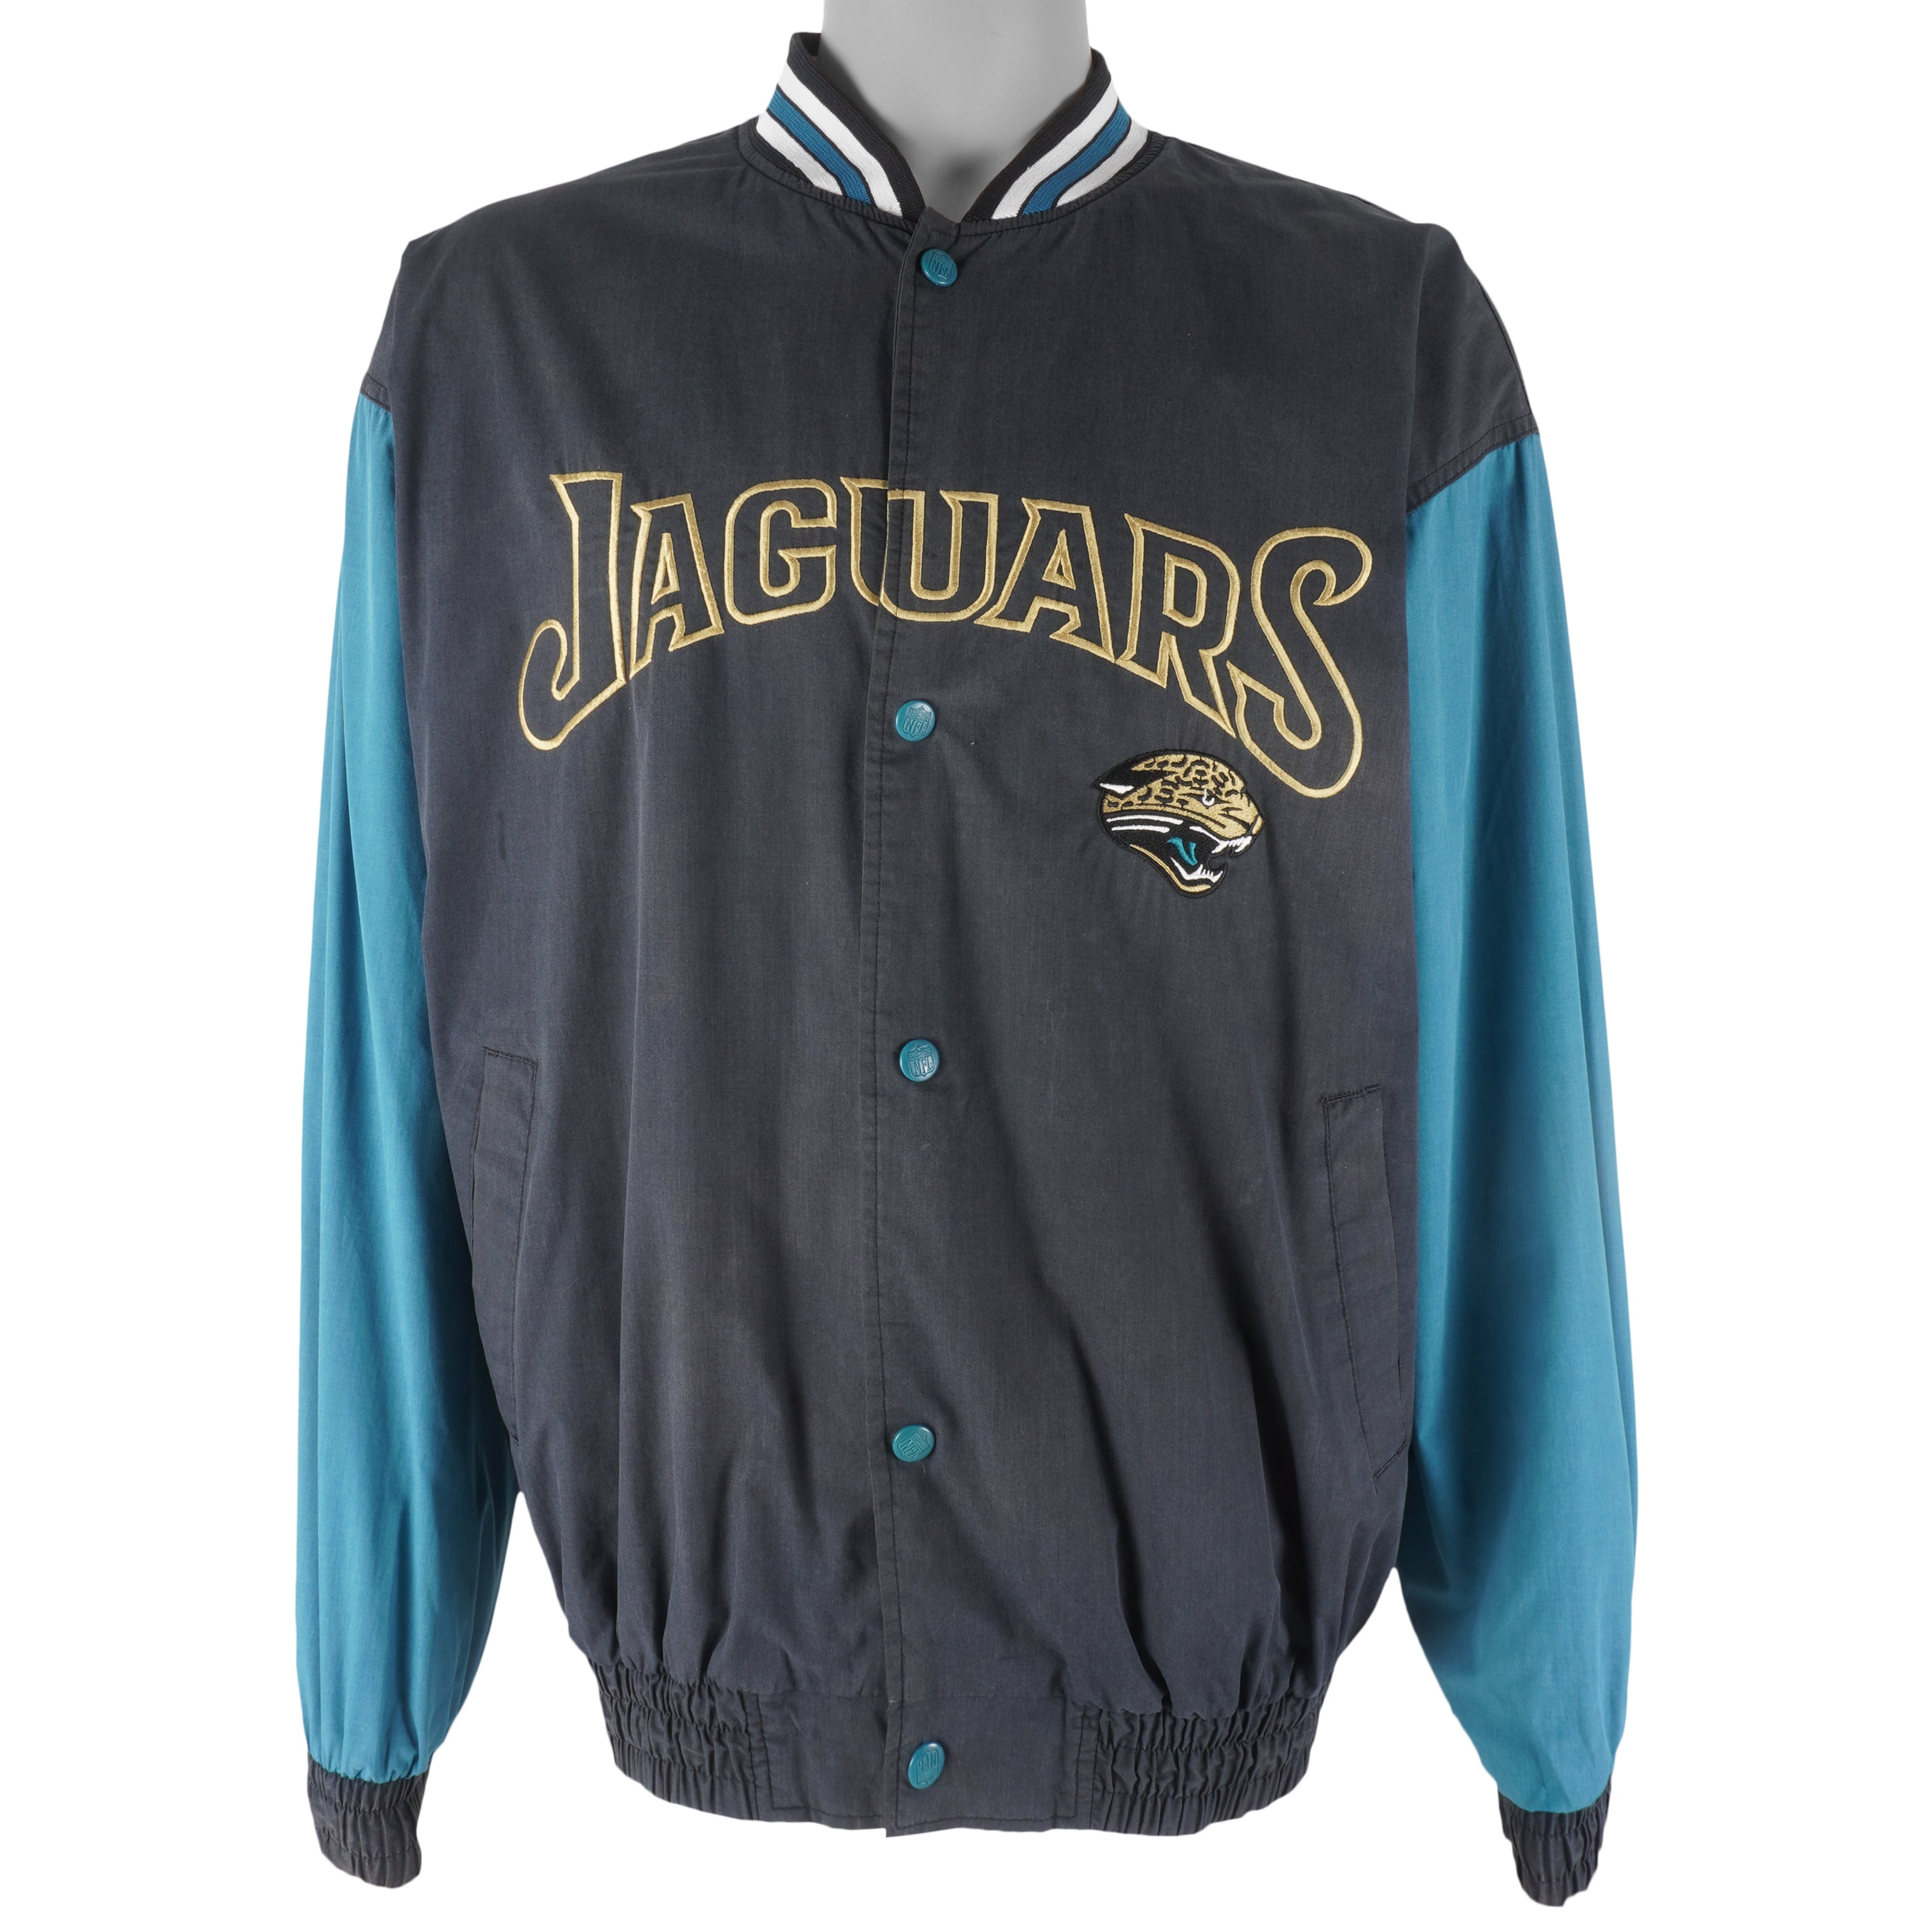 Vintage NFL (Official Fan) - Jacksonville Jaguars Jacket 1990s Large